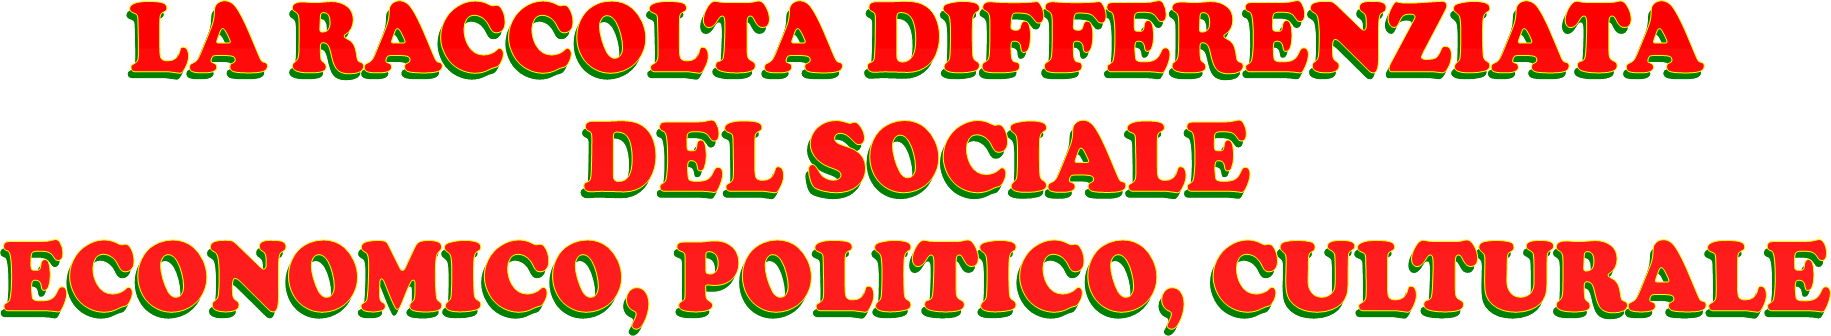 La raccolta differenziata del sociale economico, politico, culturale